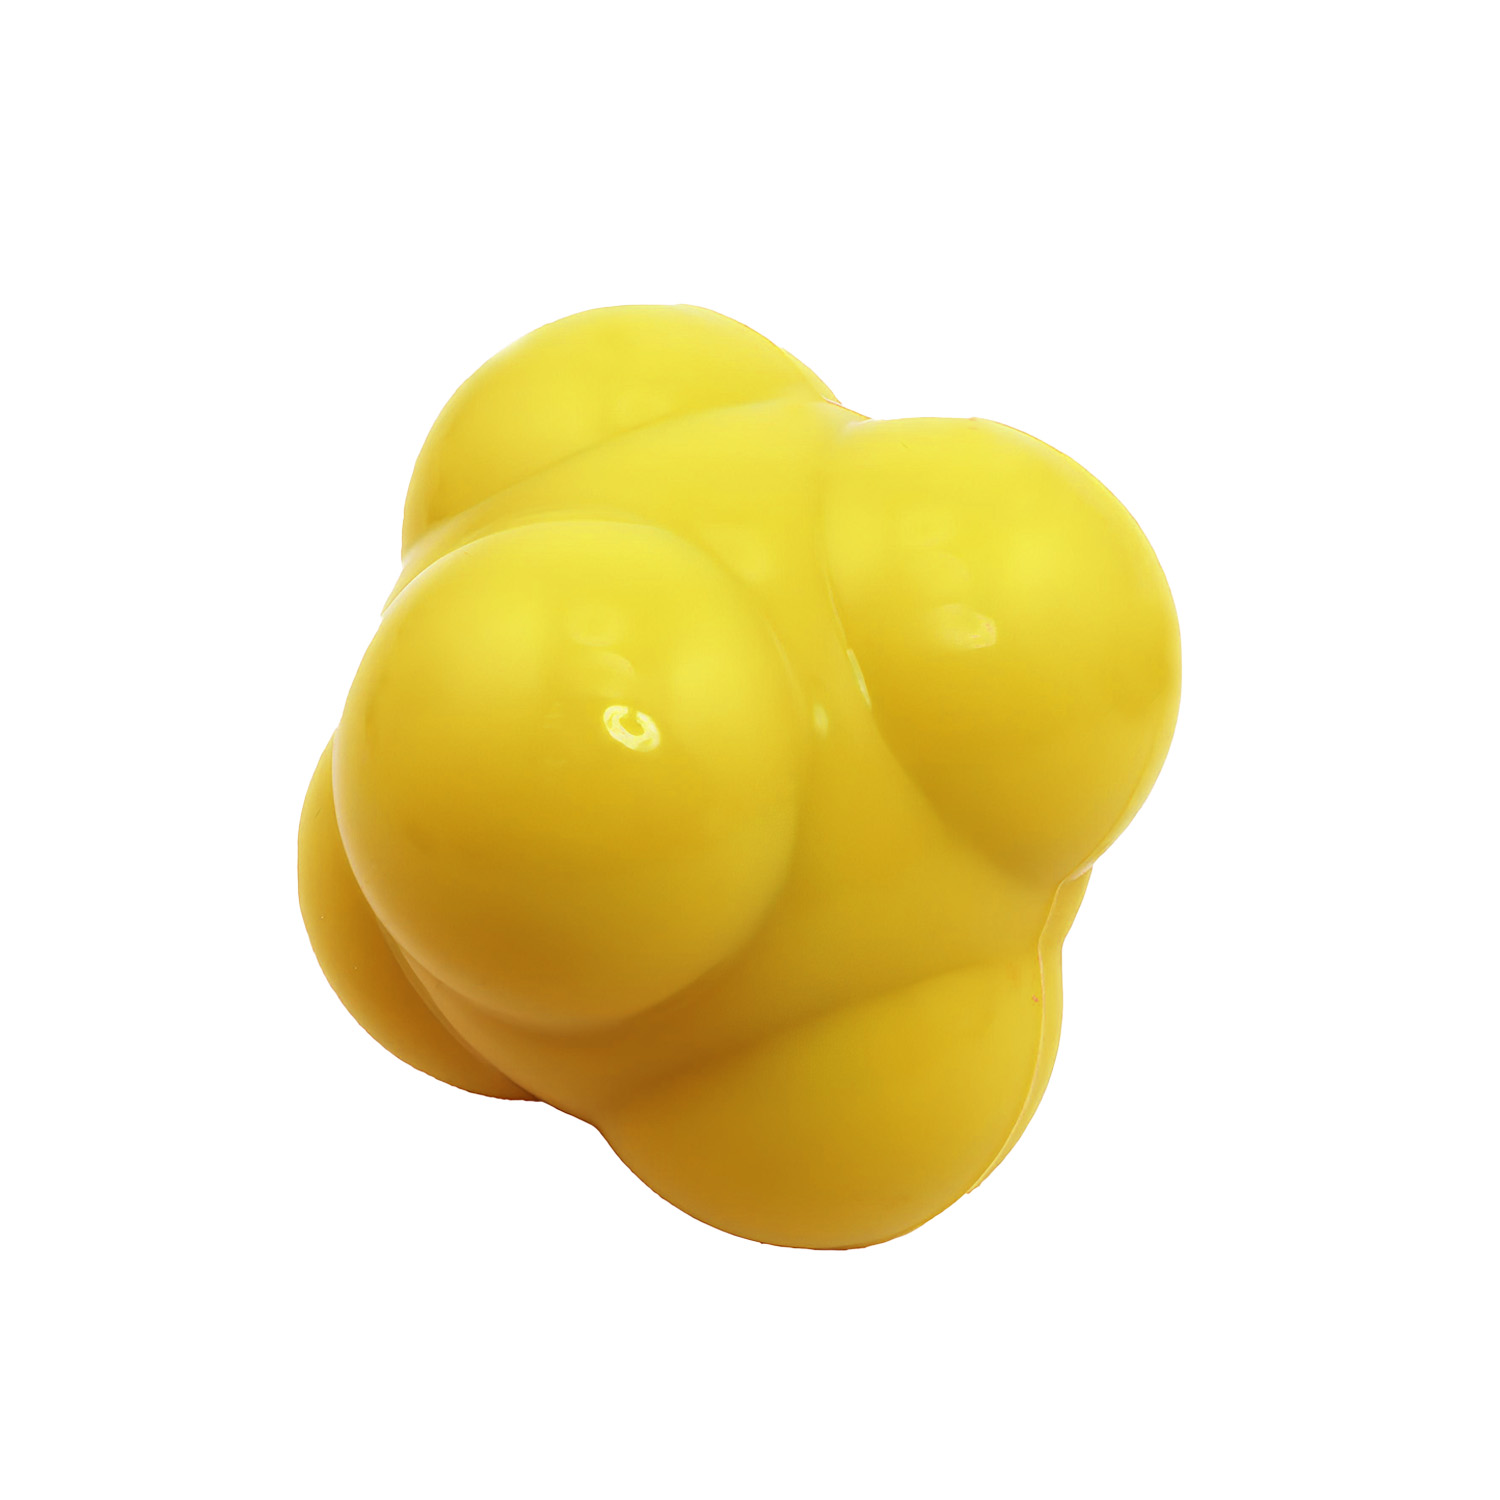 Helix Reaction Ball - Yellow